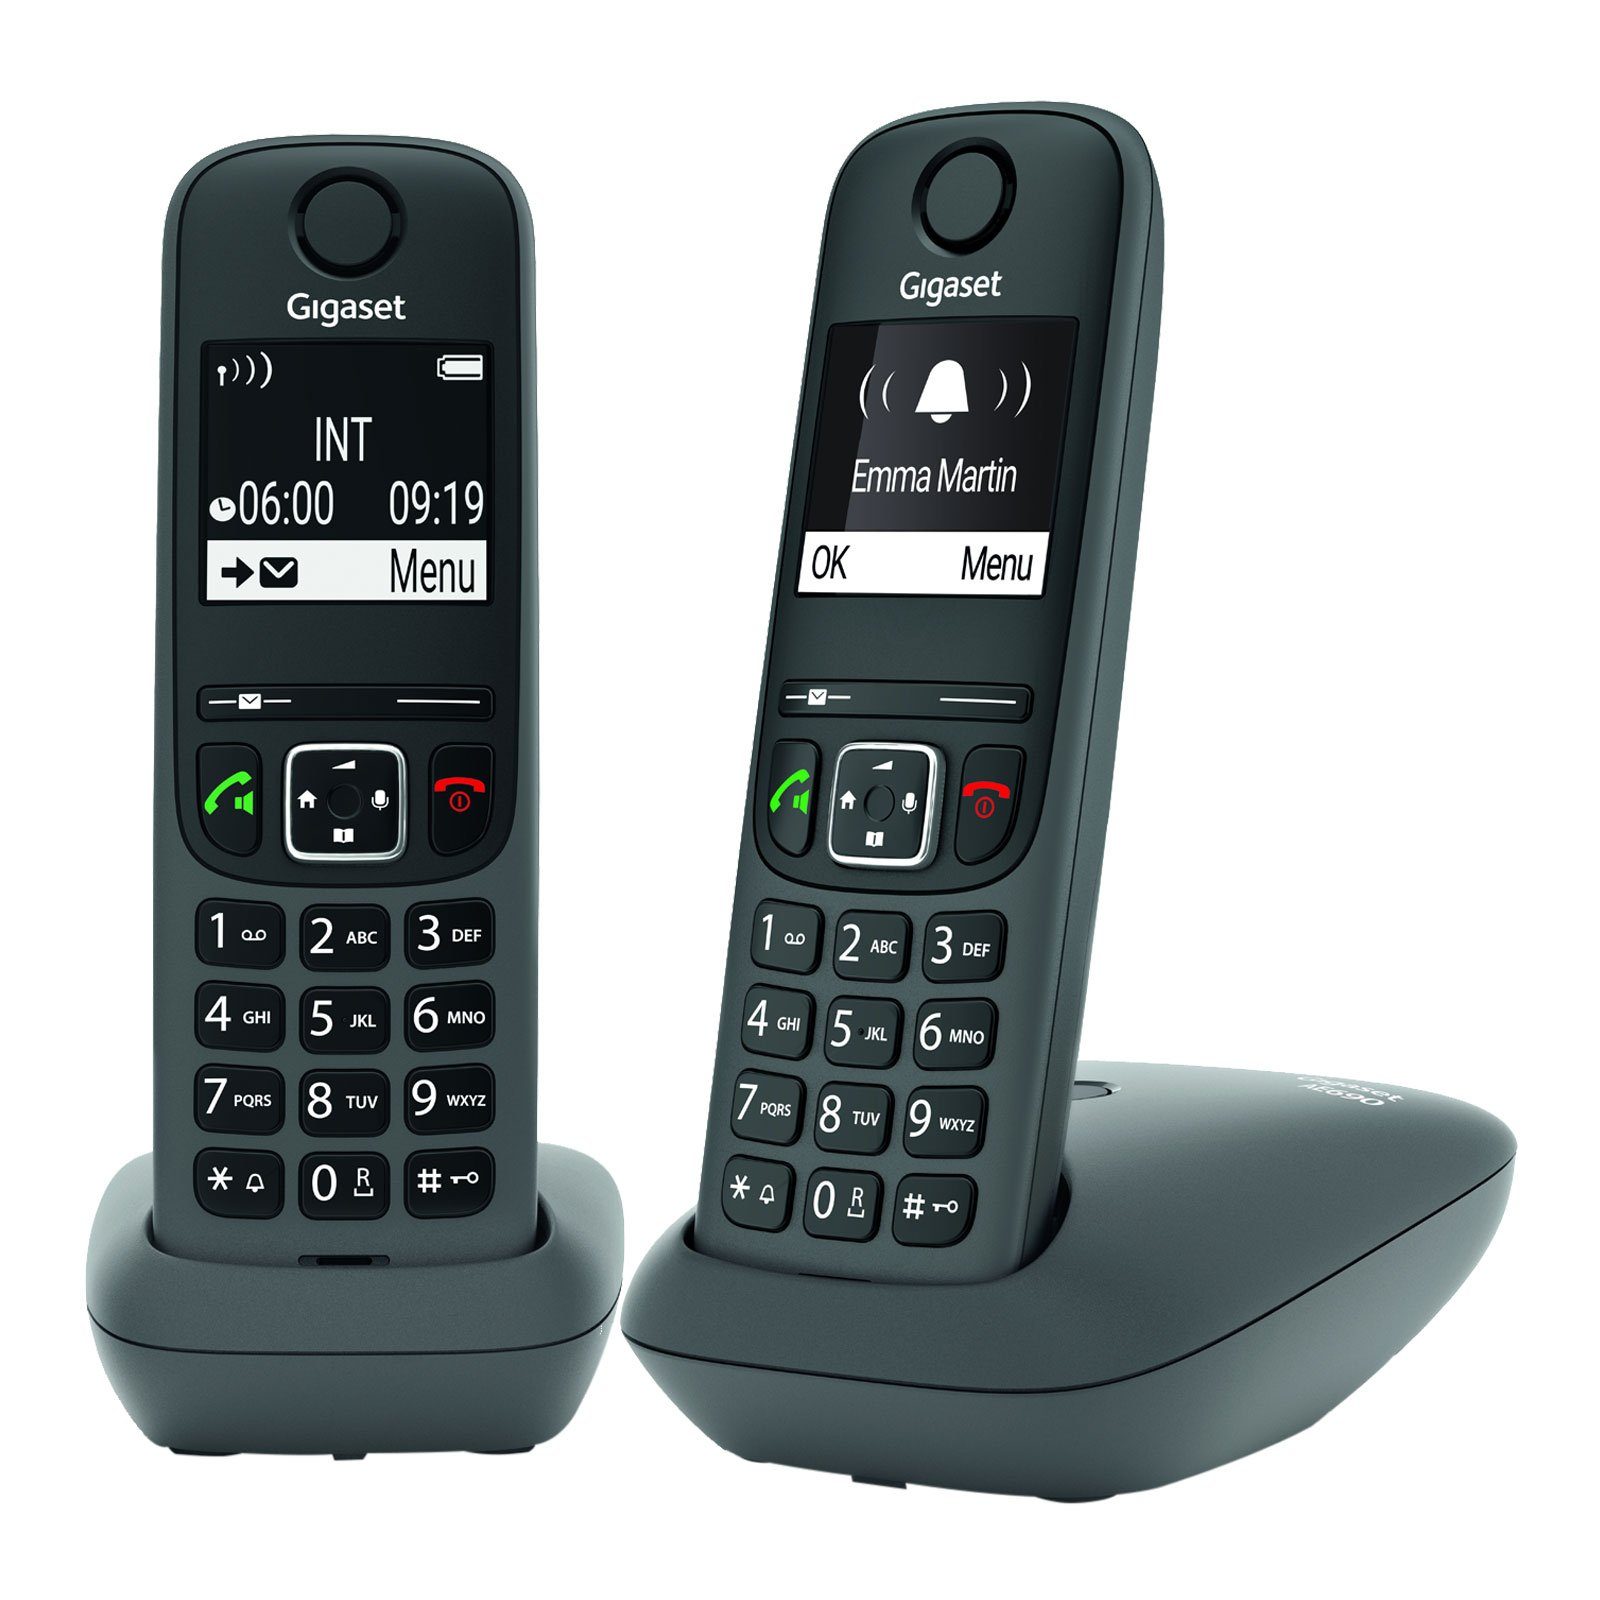 Gigaset mit Grafik-Display Kontrast schwarz-weiß Beleuchtetes 2, 690 Mobilteile), hohem AE DECT-Telefon anthrazit (Mobilteile: zwei Duo Schnurloses